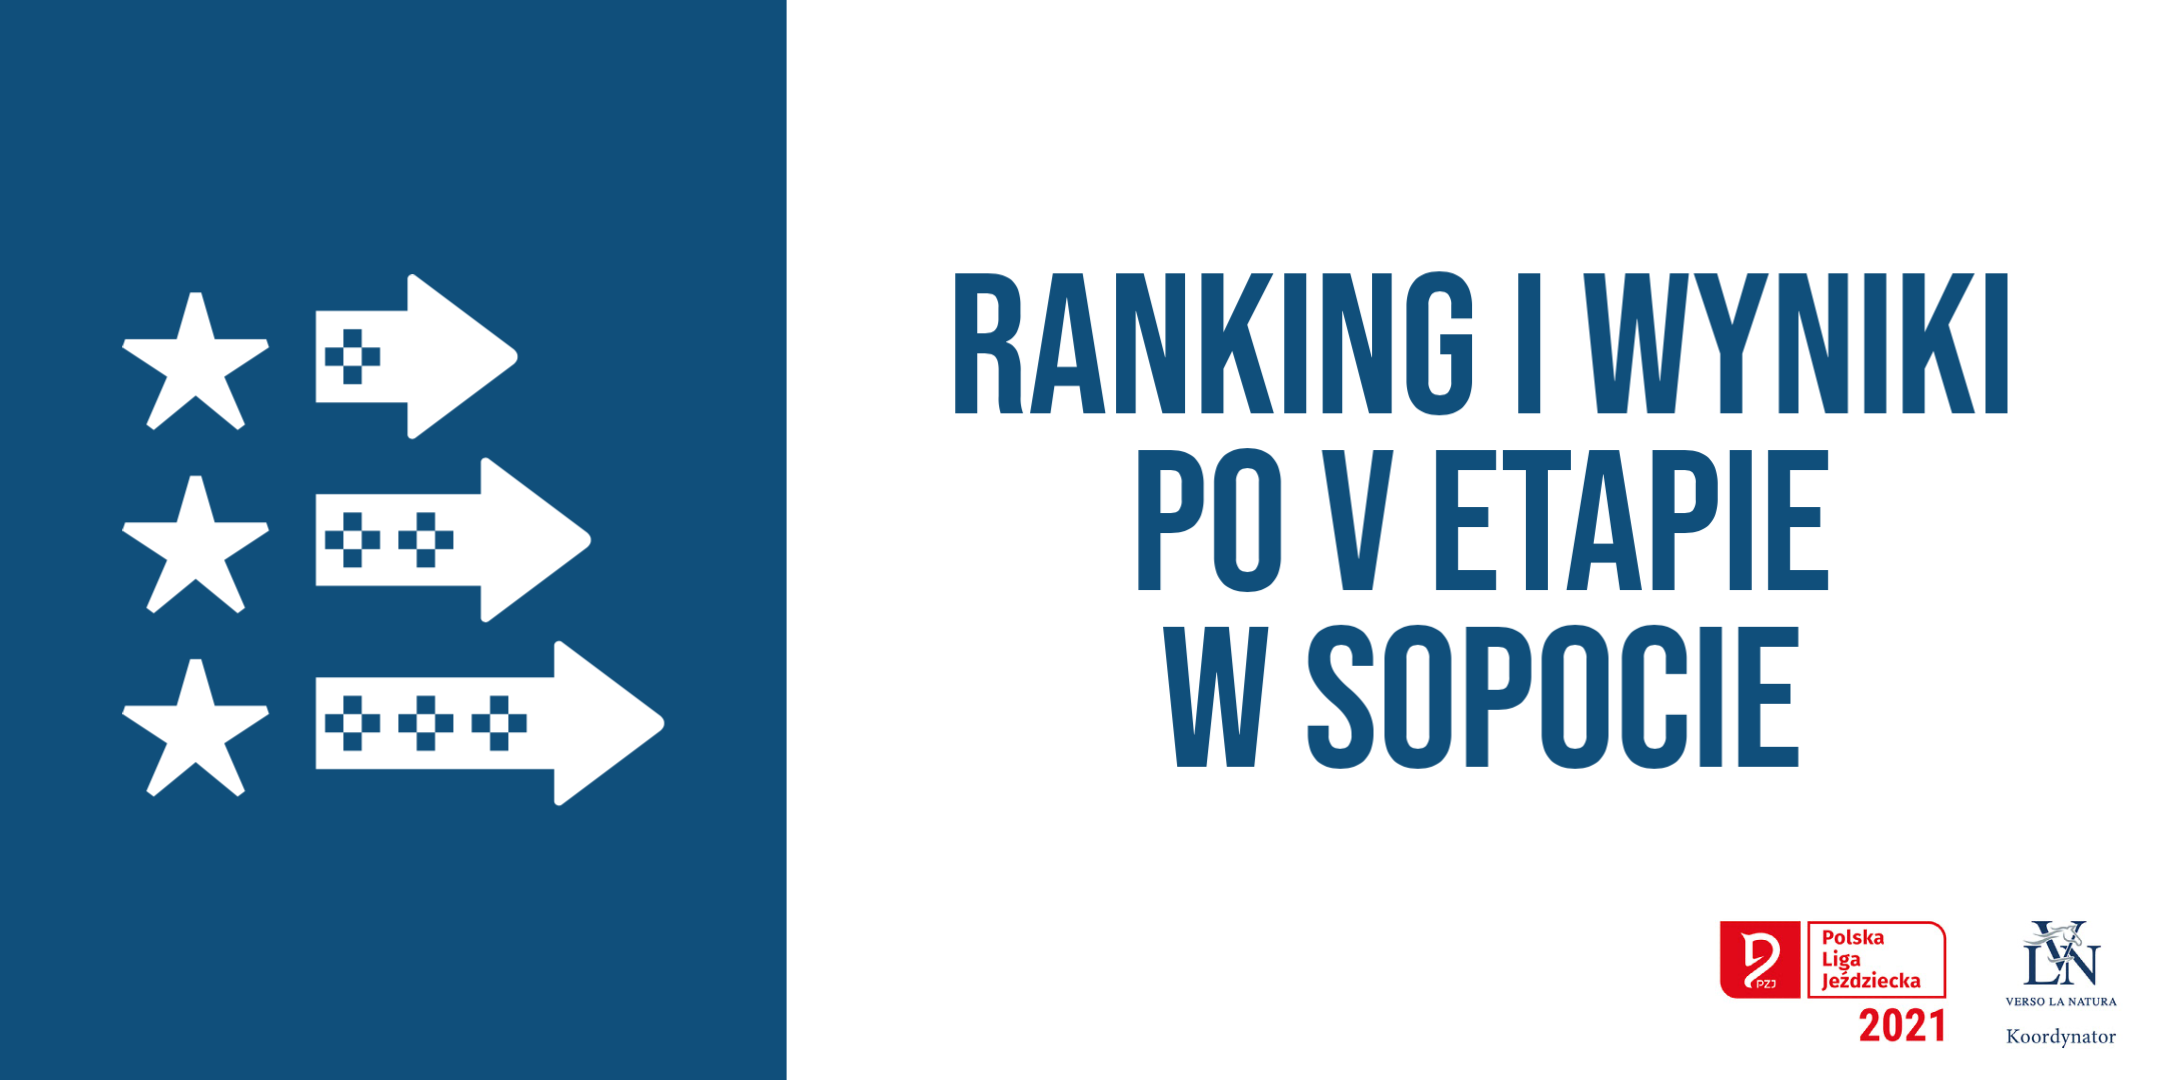 Ranking i wyniki po V etapie w Sopocie